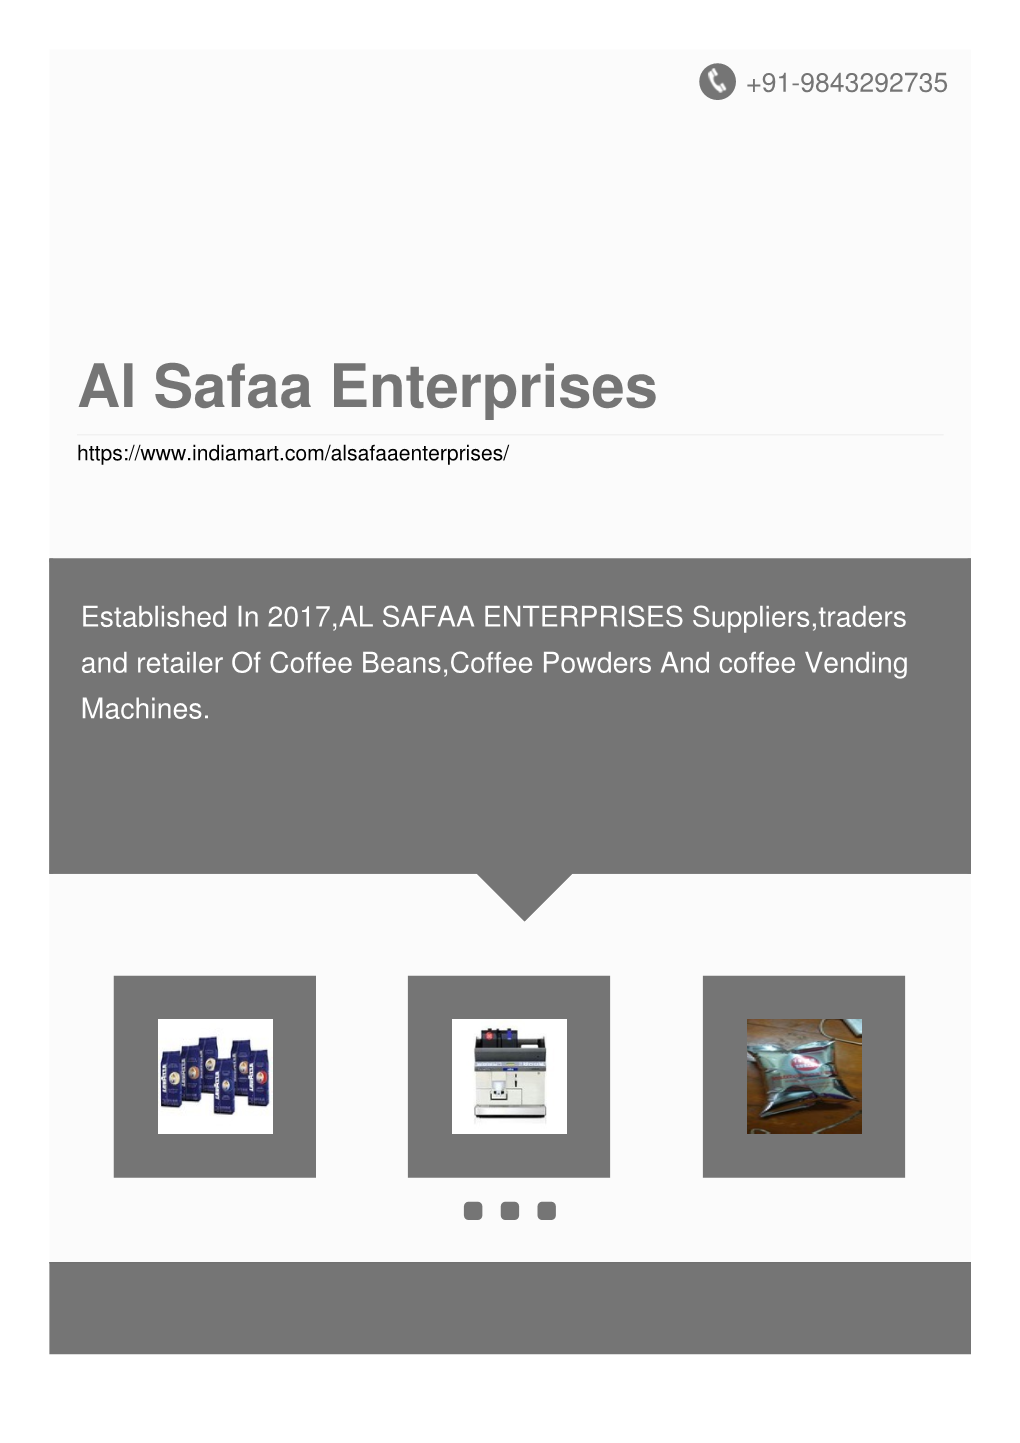 Al Safaa Enterprises